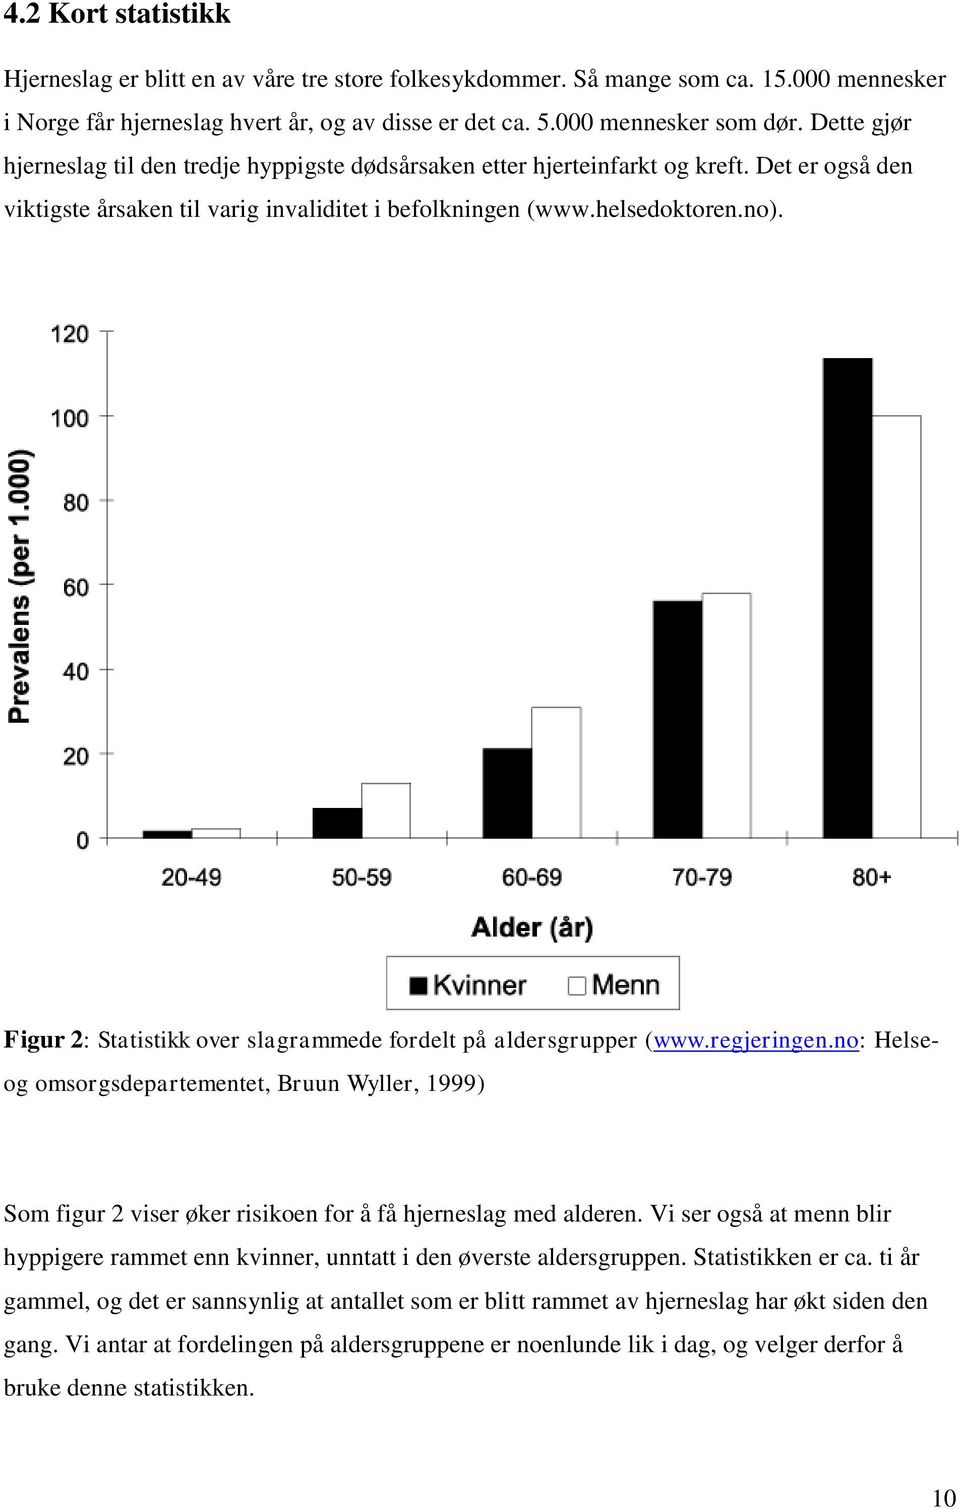 Figur 2: Statistikk over slagrammede fordelt på aldersgrupper (www.regjeringen.no: Helse- og omsorgsdepartementet, Bruun Wyller, 1999) Som figur 2 viser øker risikoen for å få hjerneslag med alderen.